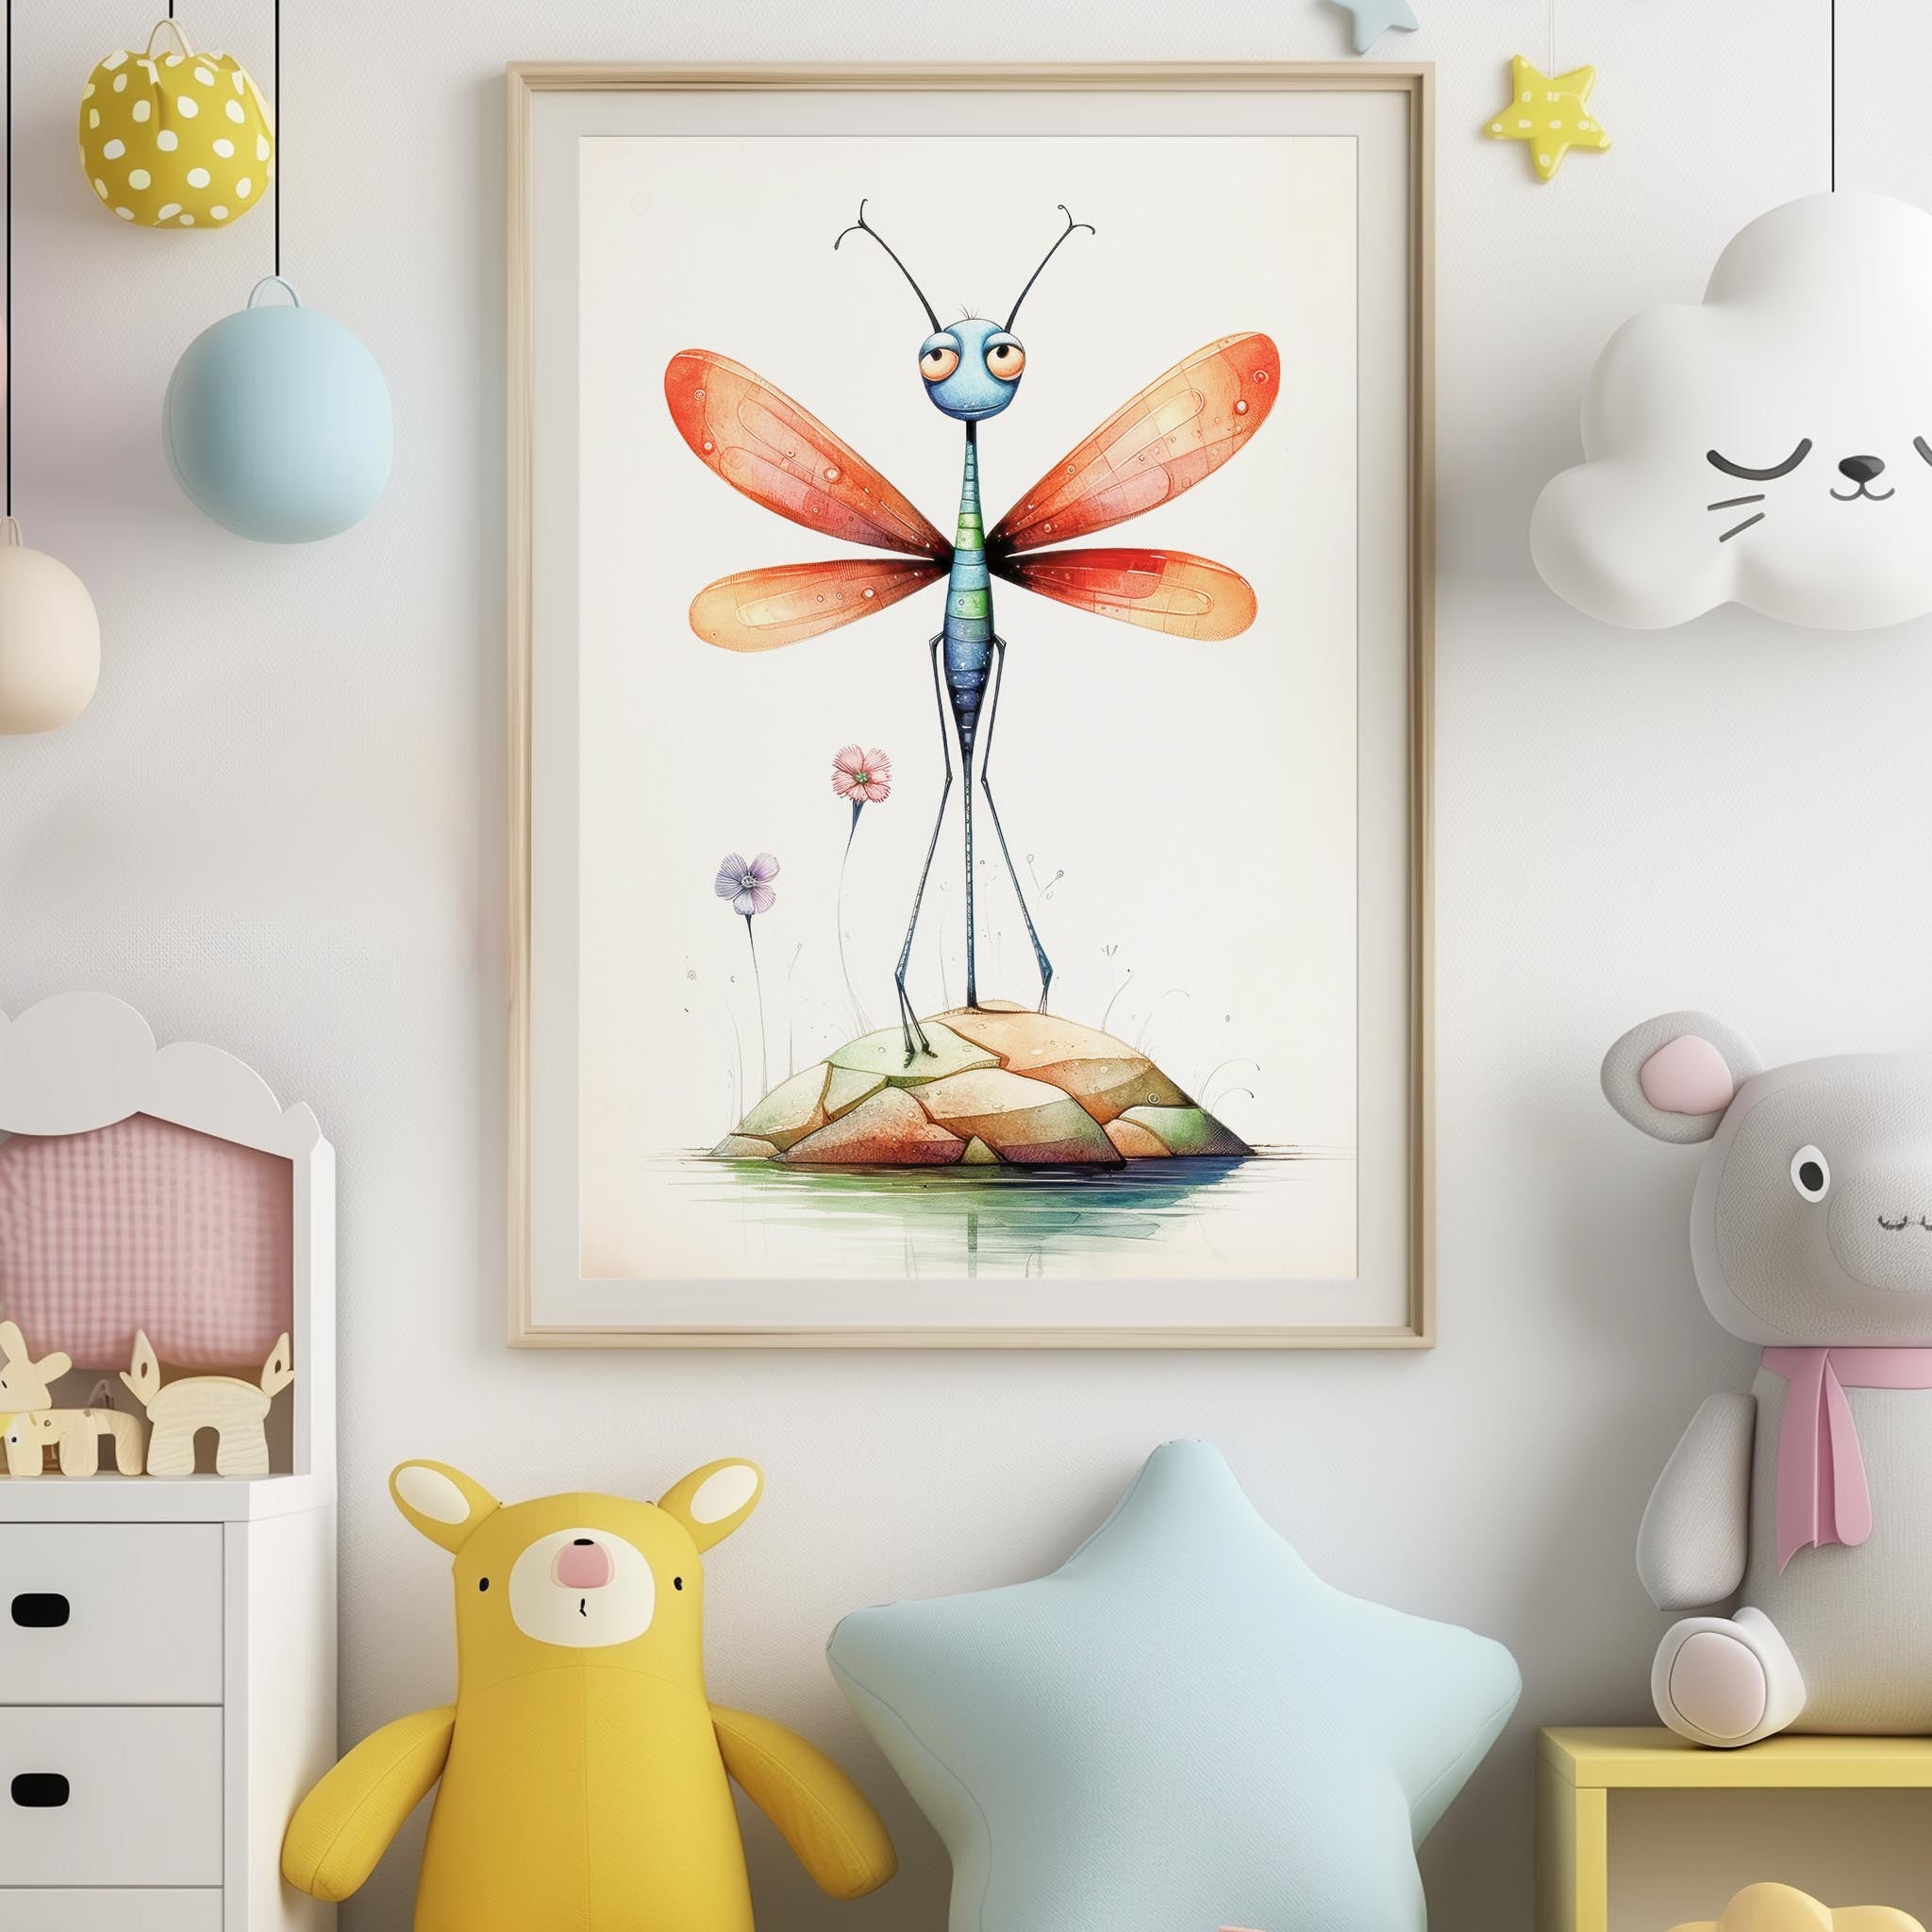 Insectes colorés - 9 modèles d'images imprimables